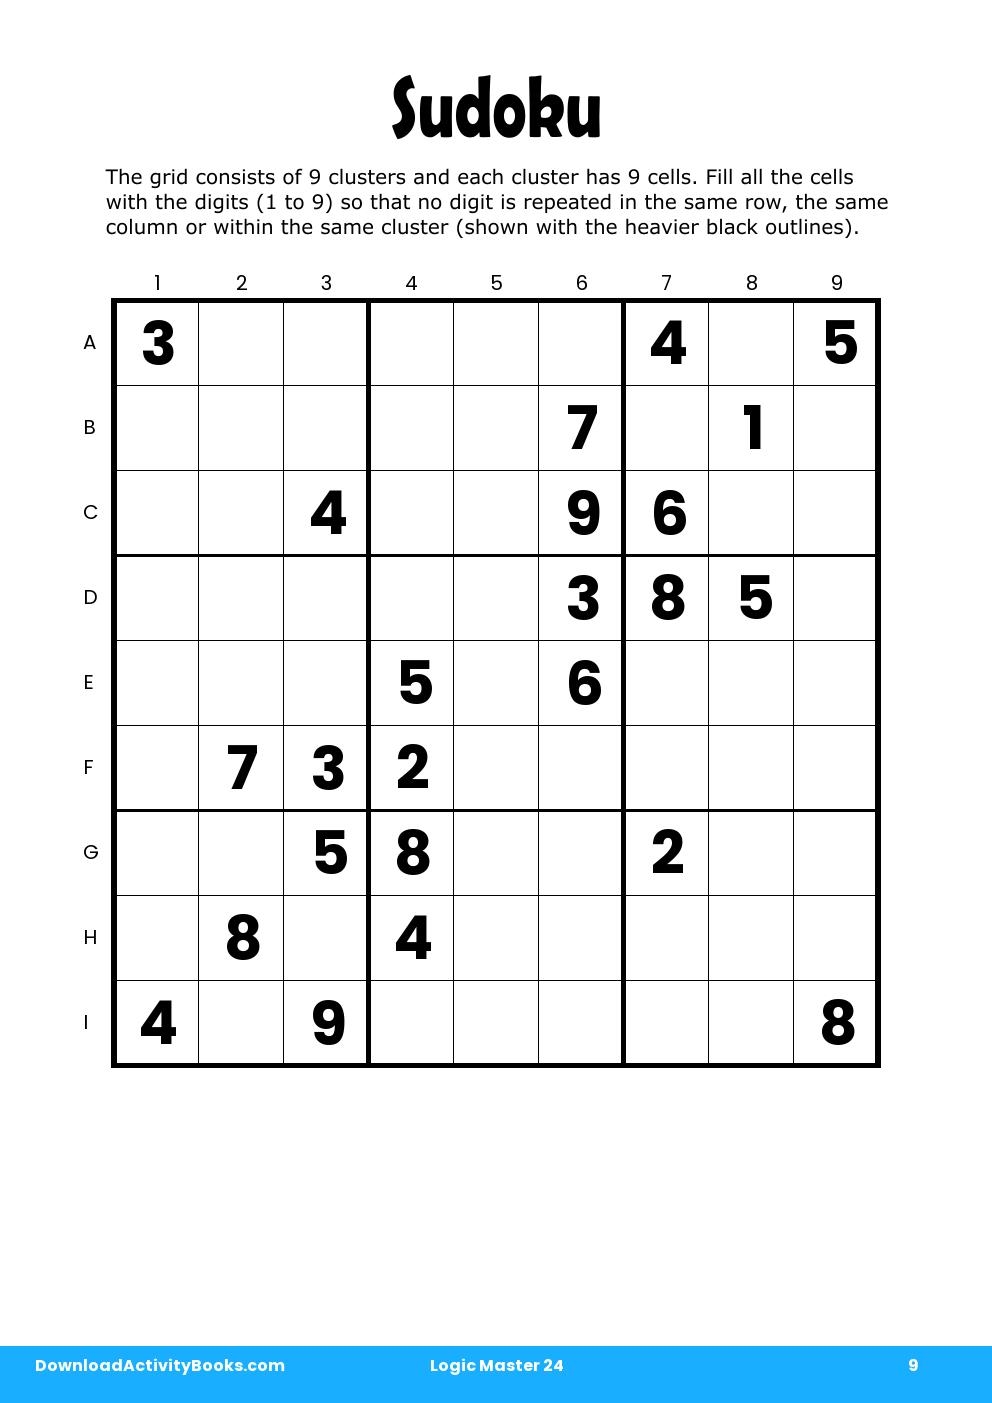 Sudoku in Logic Master 24